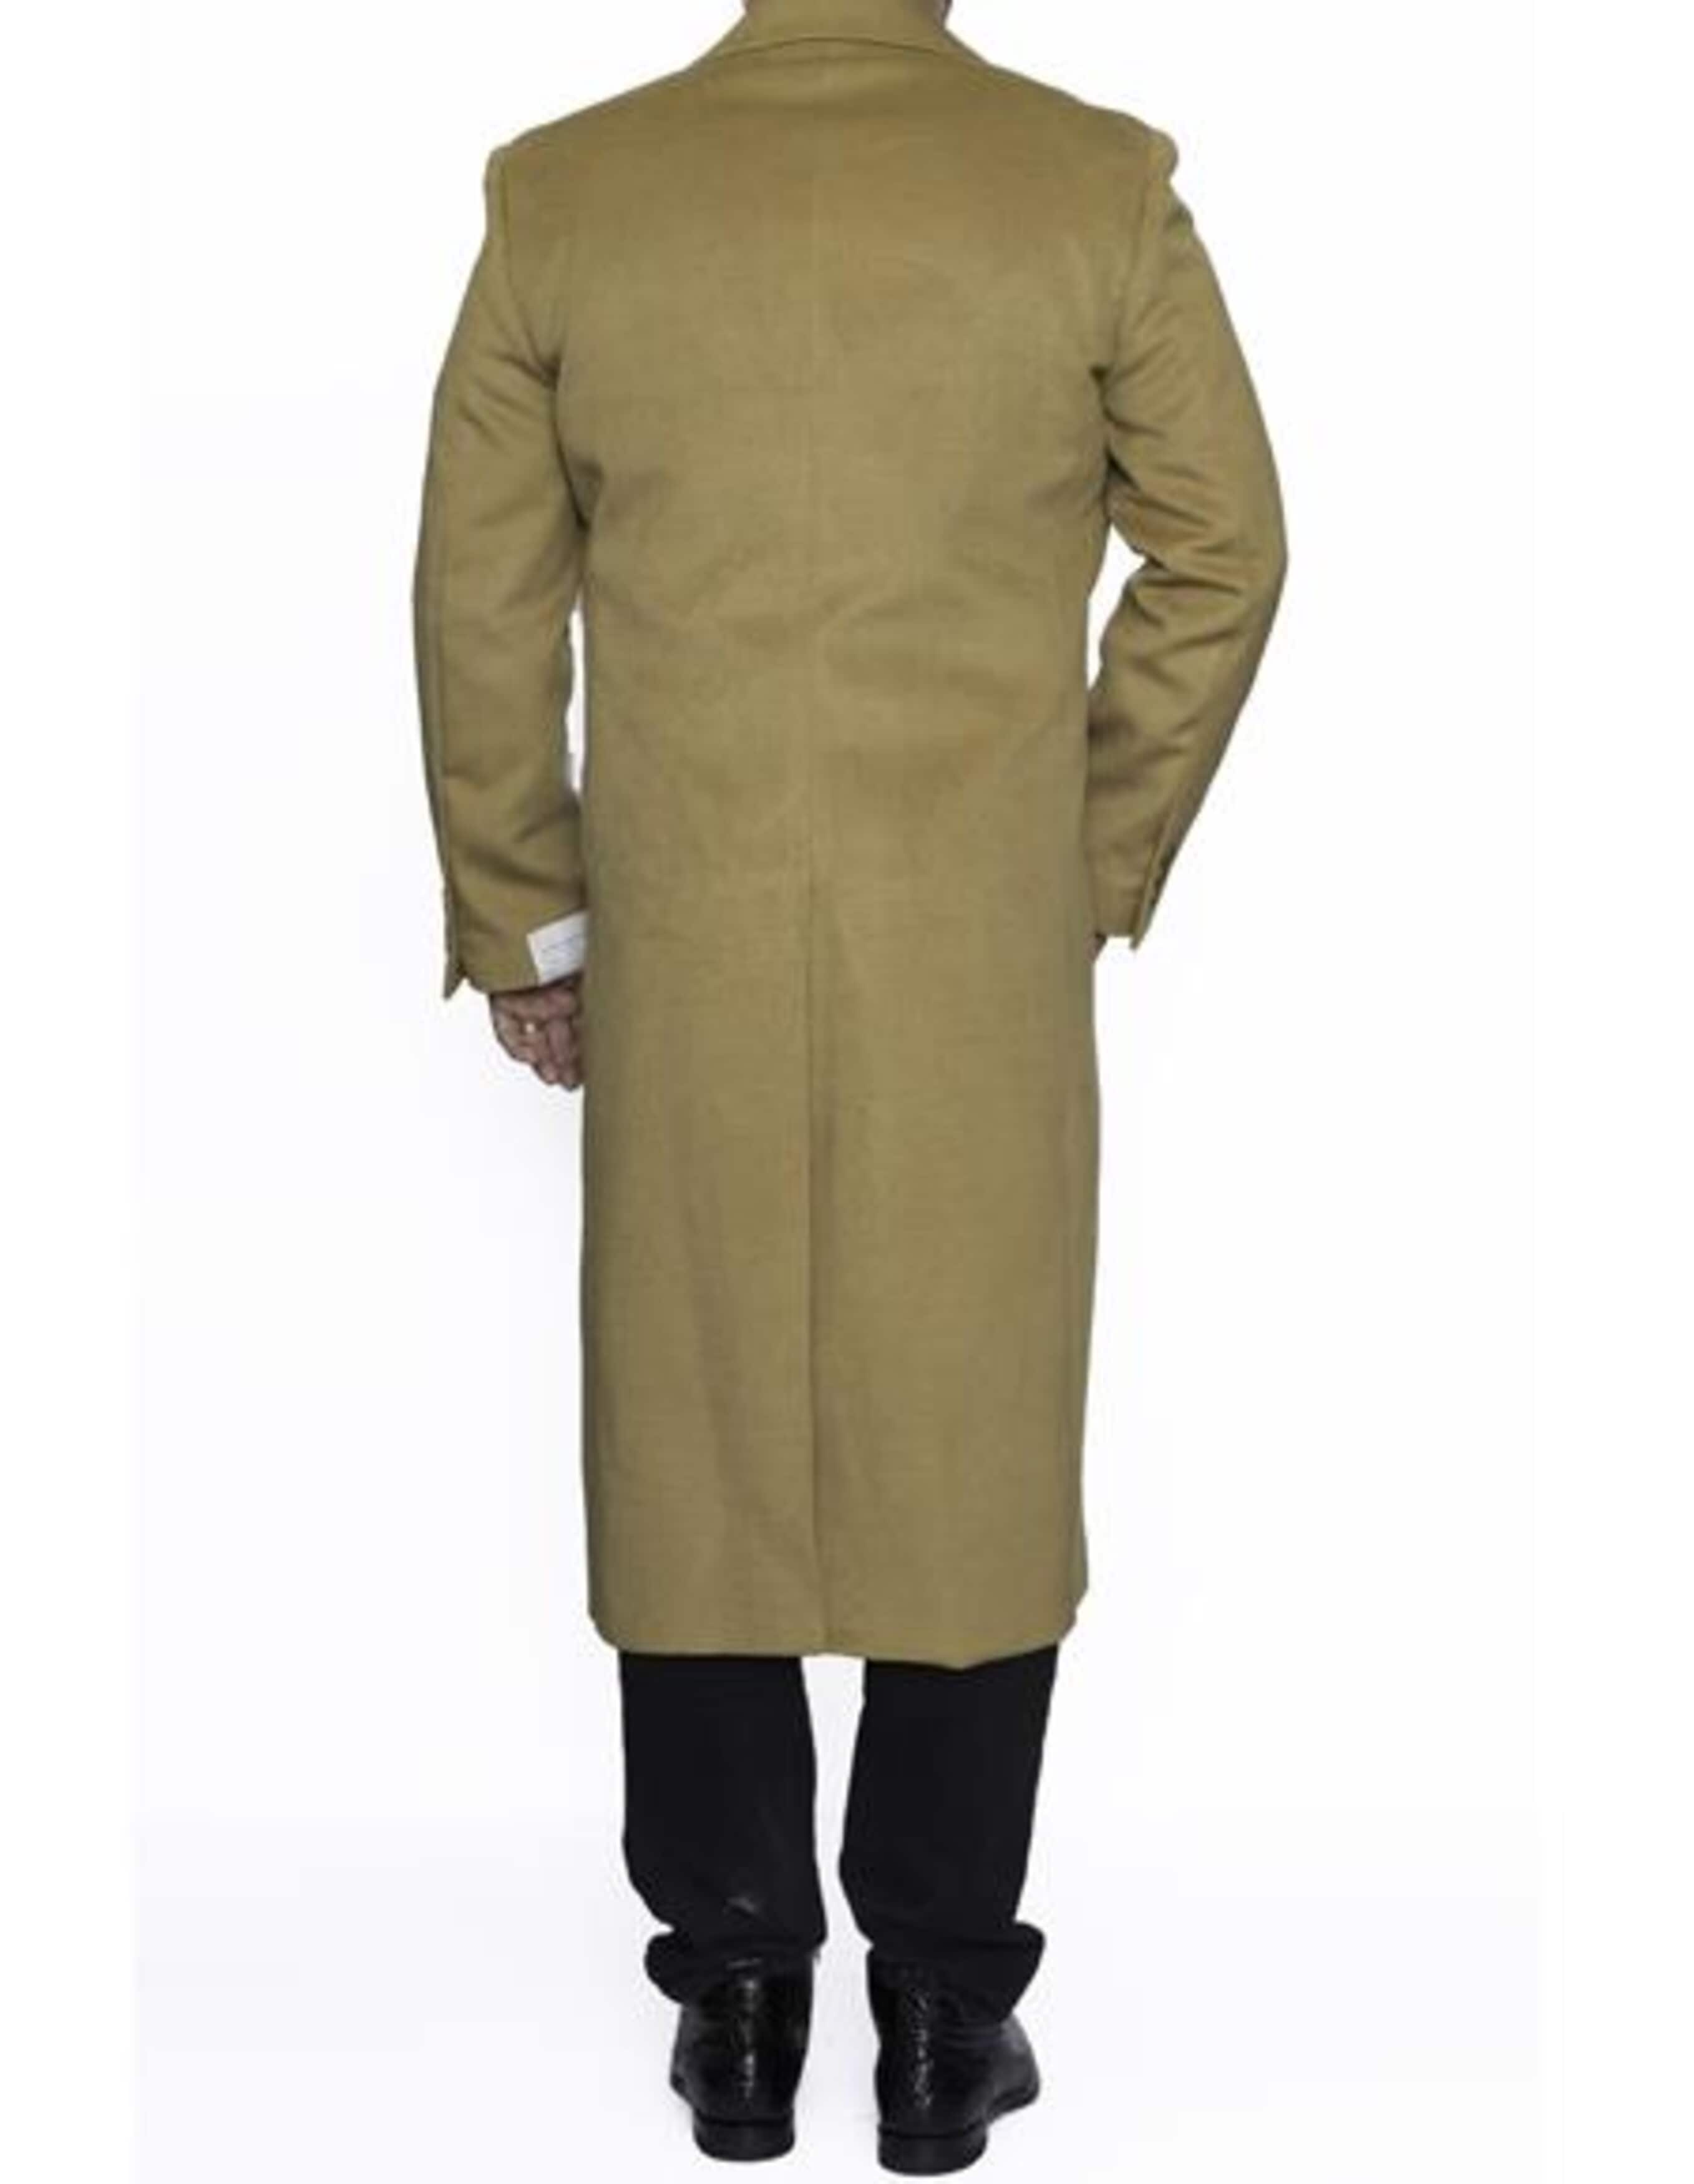 3 Button Camel Full Length Wool Dress Ankle length Top Coat/Overcoat - Mens Overcoat